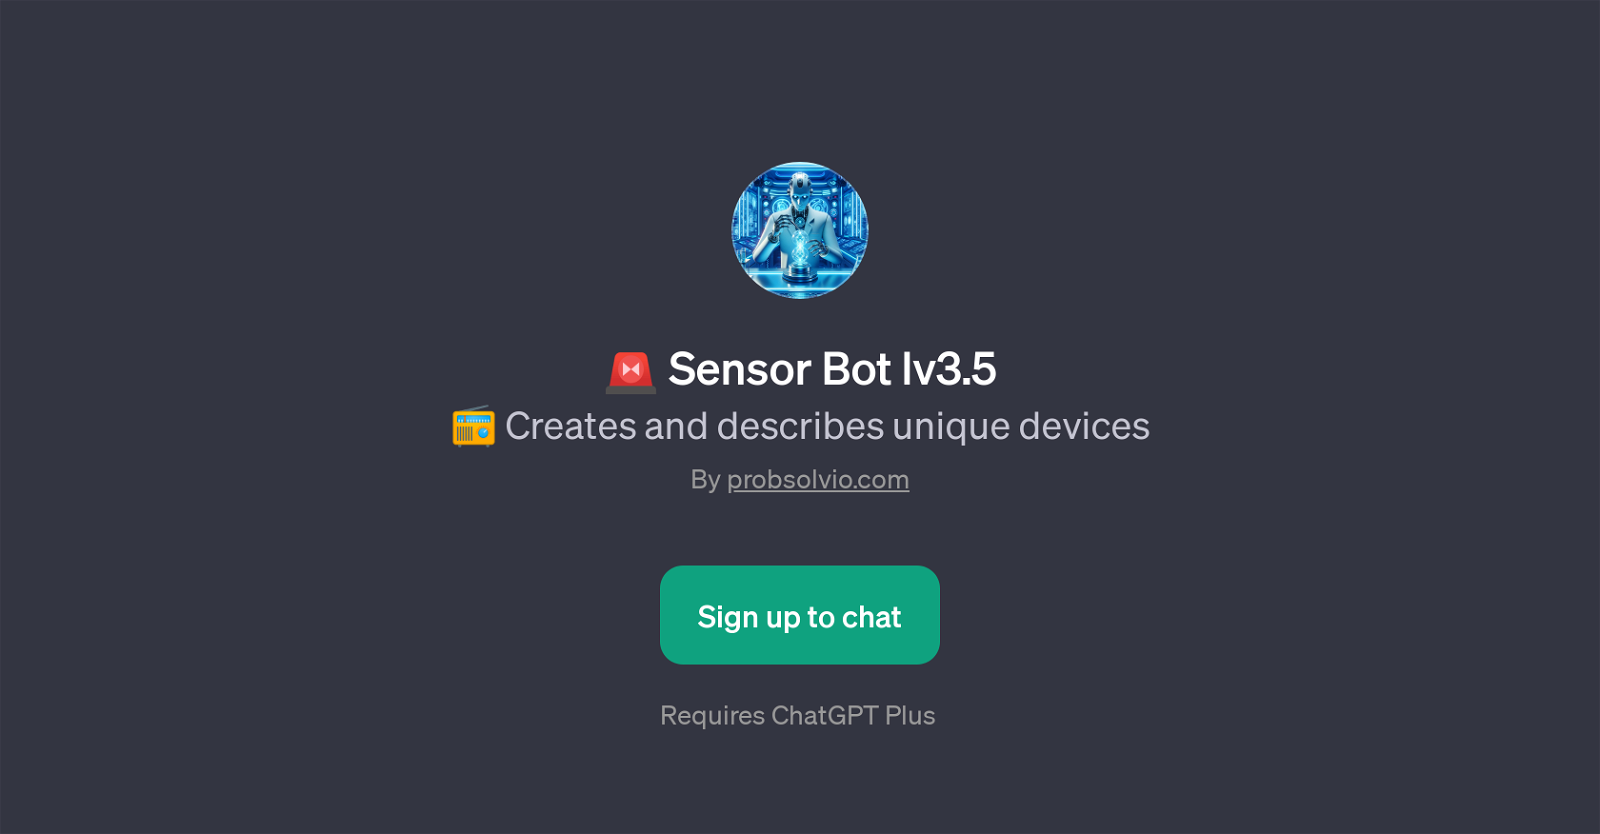 Sensor Bot lv3.5 website